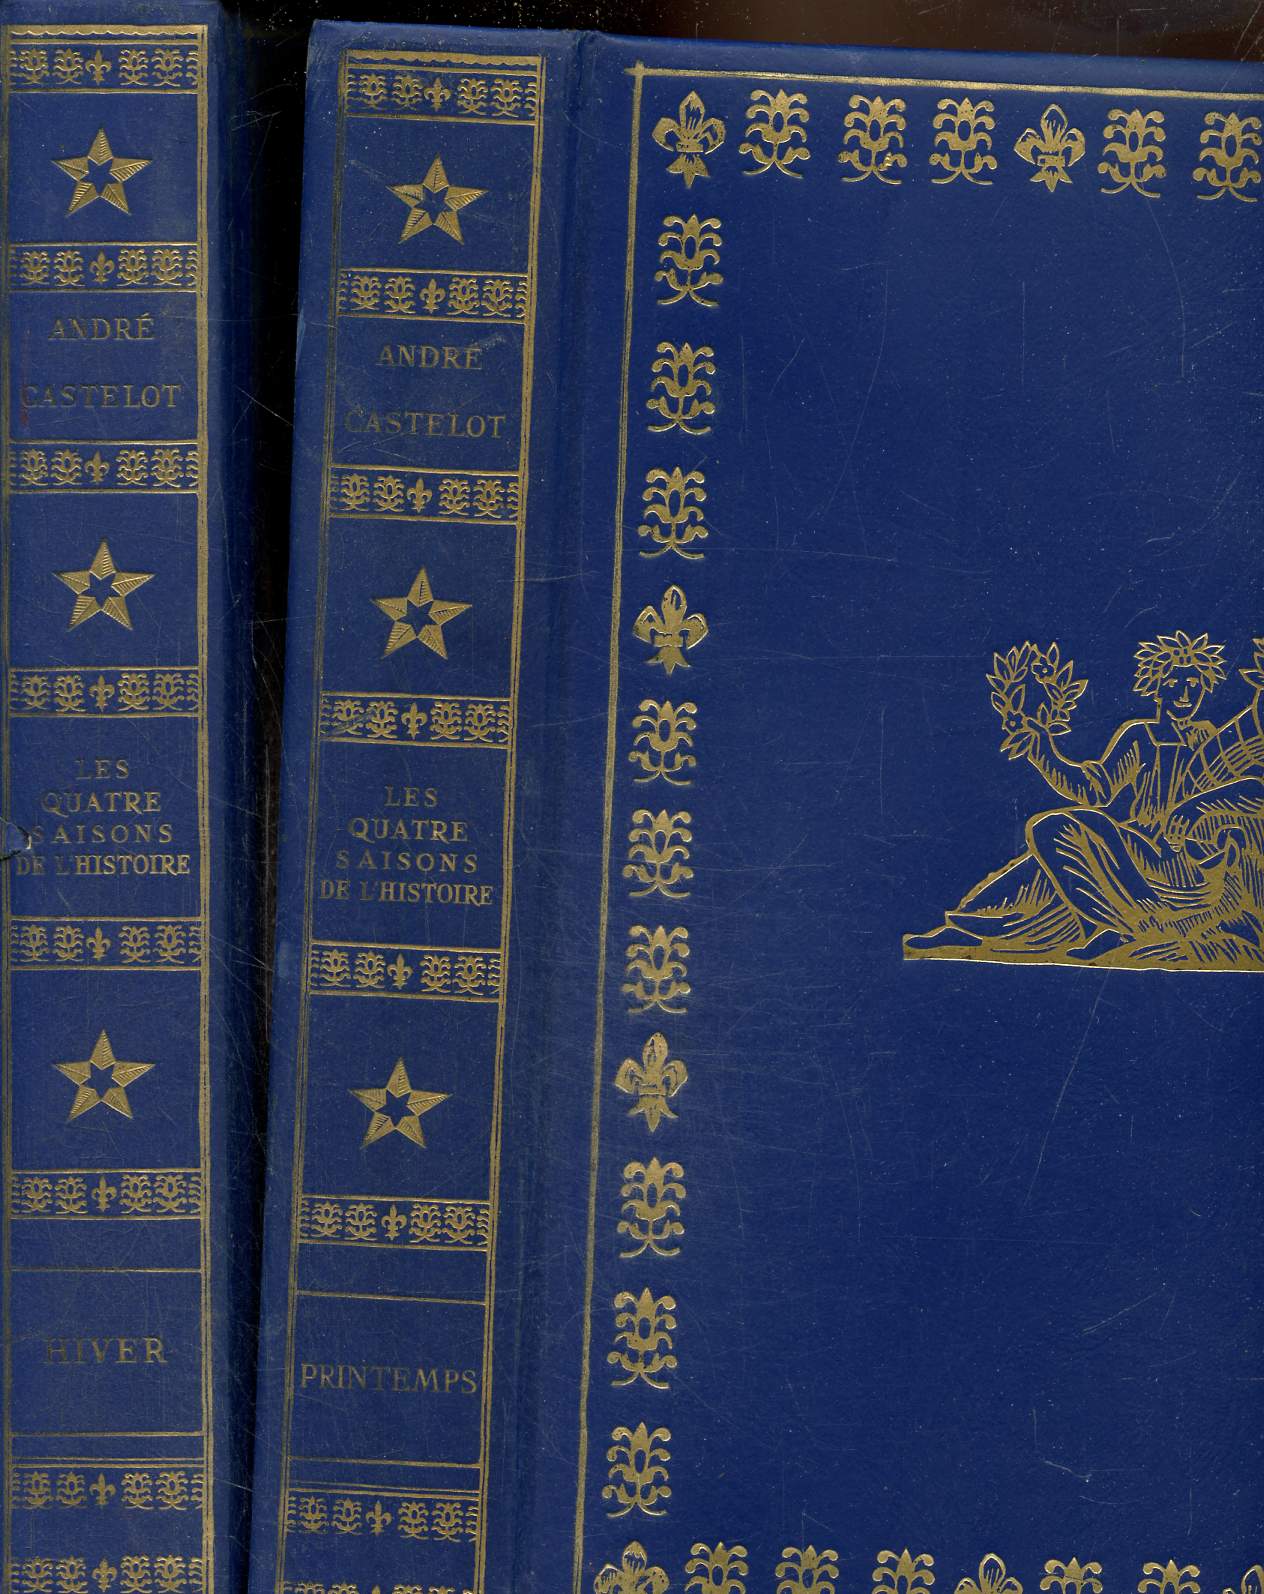 Les quatre saisons de l'histoire 2 volumes, Hiver et Printemps